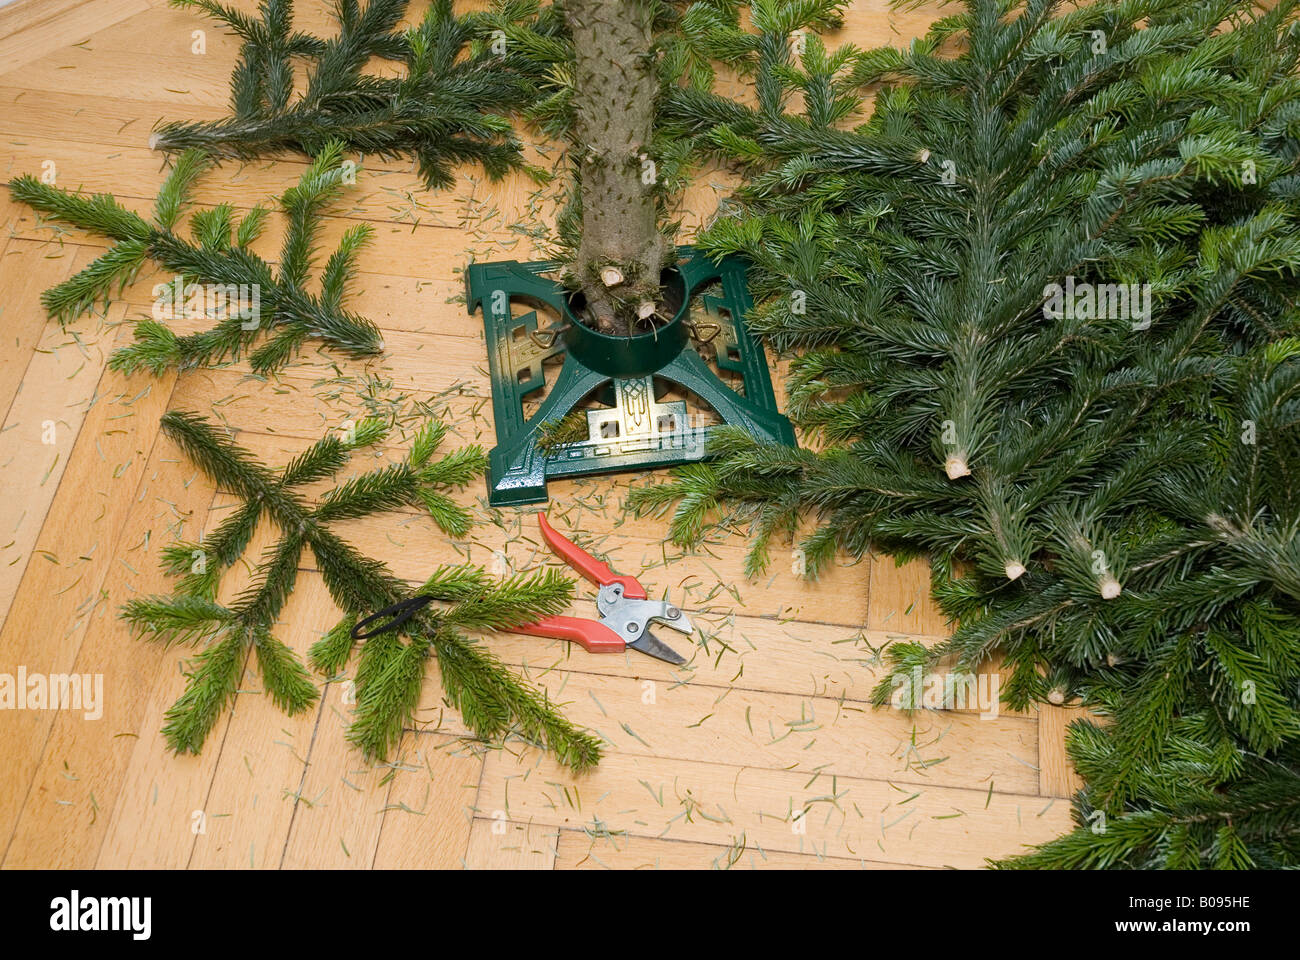 Weihnachtsbaum mit seinem Rüssel noch in den Baumbestand, Branchen und Gartenarbeitscheren auf dem Boden neben dem Stand abgebaut Stockfoto